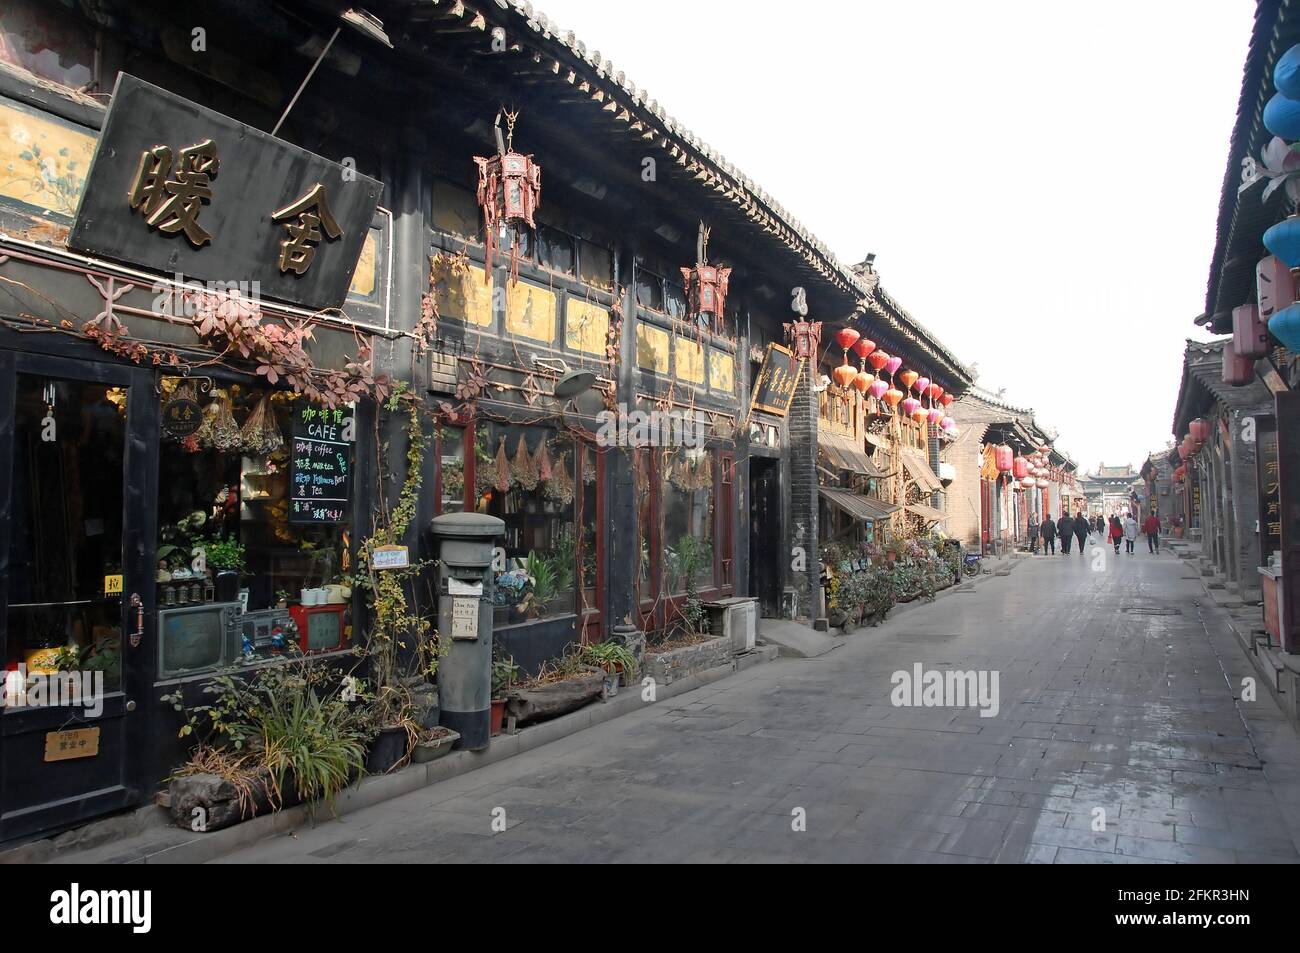 Pingyao dans la province du Shanxi, Chine : une route à Pingyao avec des cafés, des restaurants, des magasins et des magasins Banque D'Images